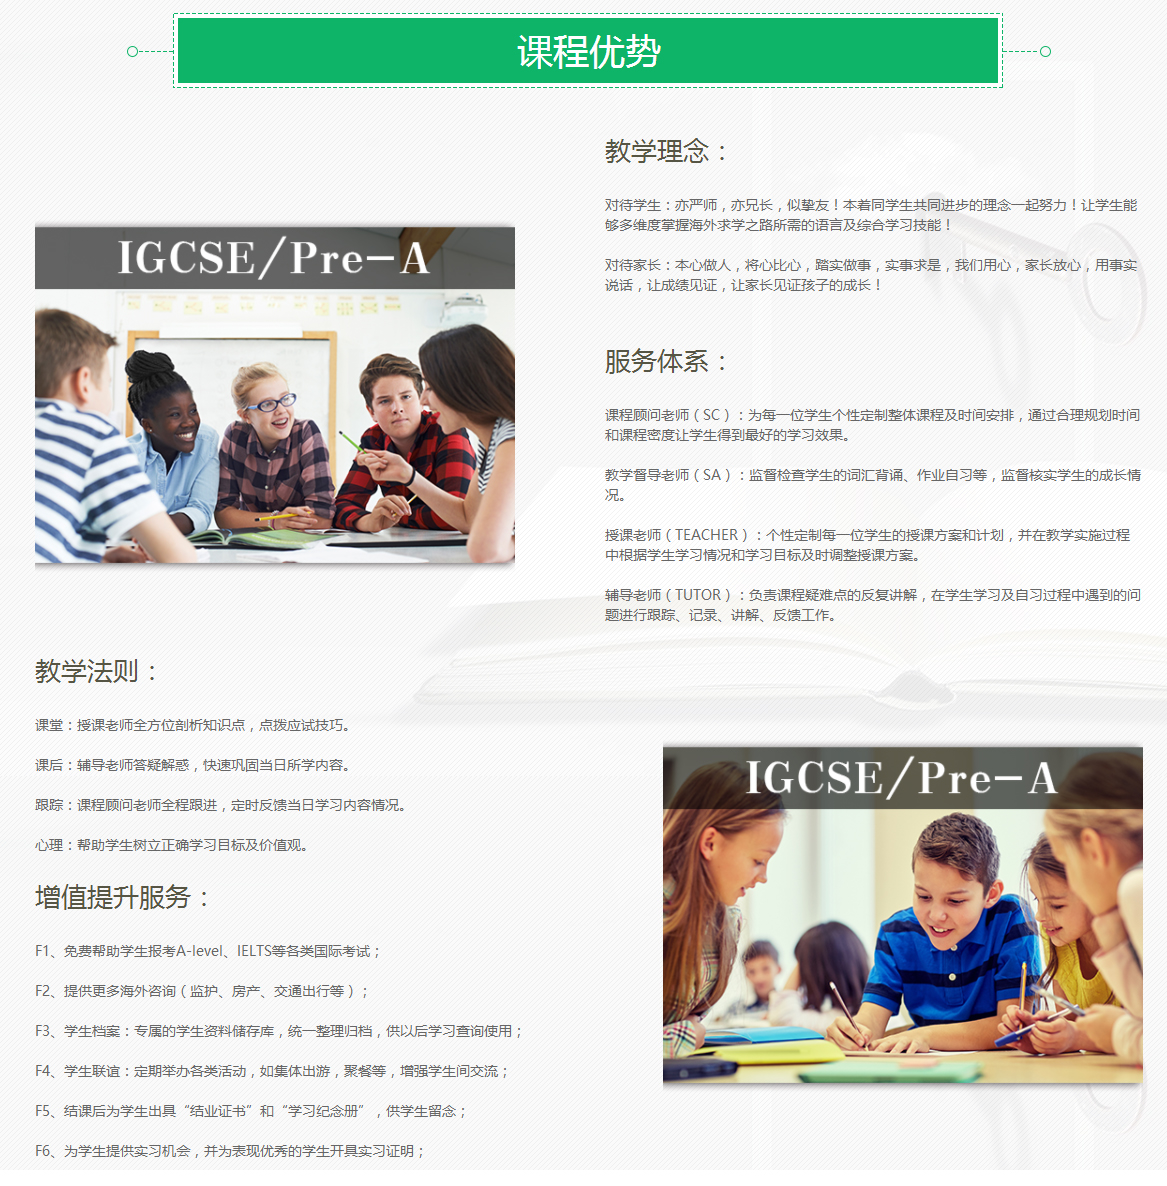 上尚国际教育IGCSE/Pre-A培训课程